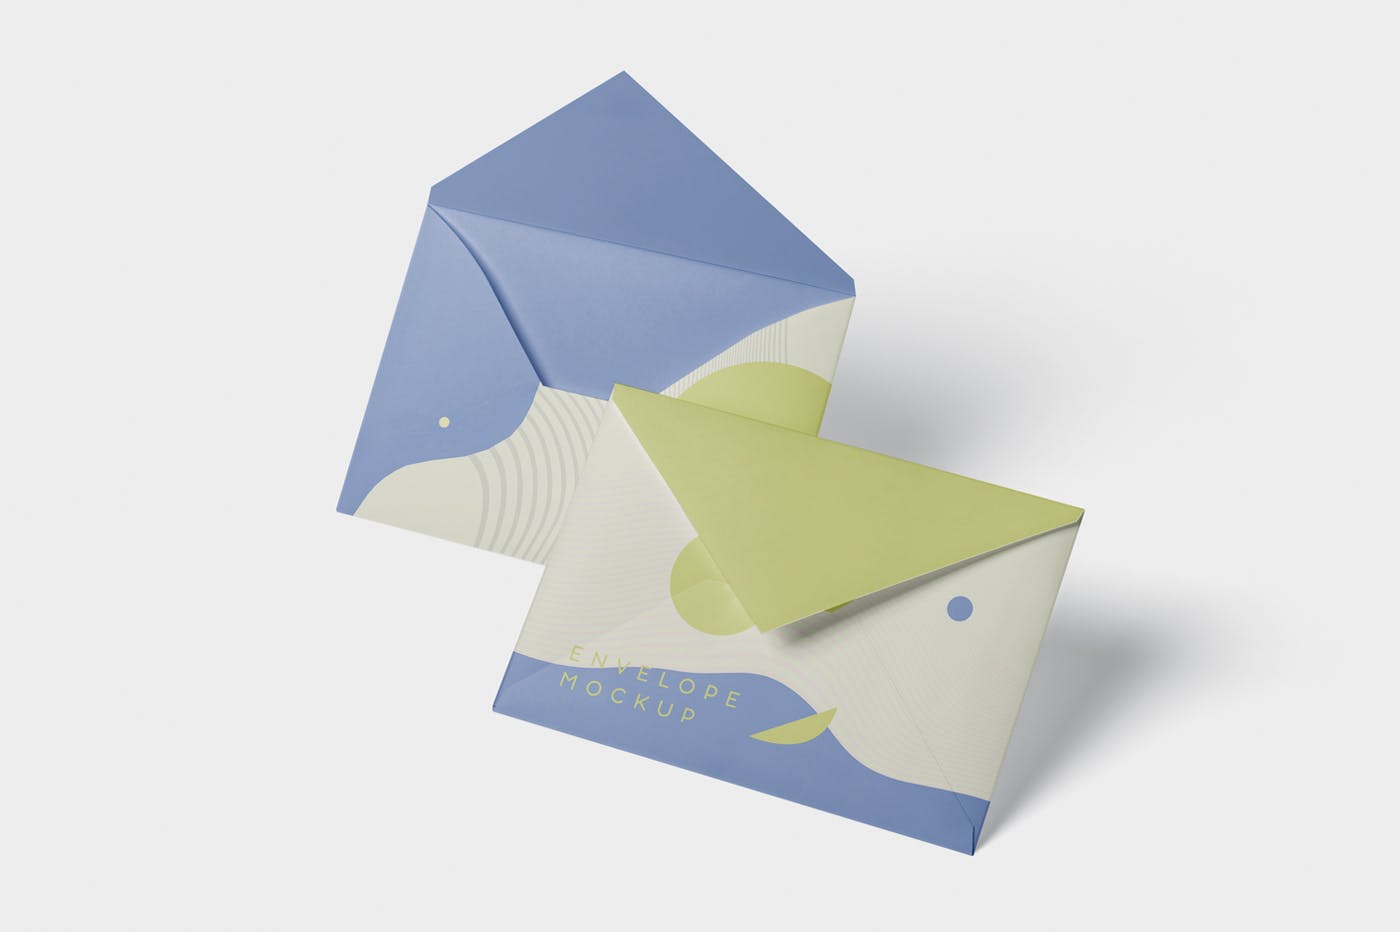 高端企业信封外观设计图第一素材精选模板 Envelope C5 – C6 Mock-Up Set插图(3)